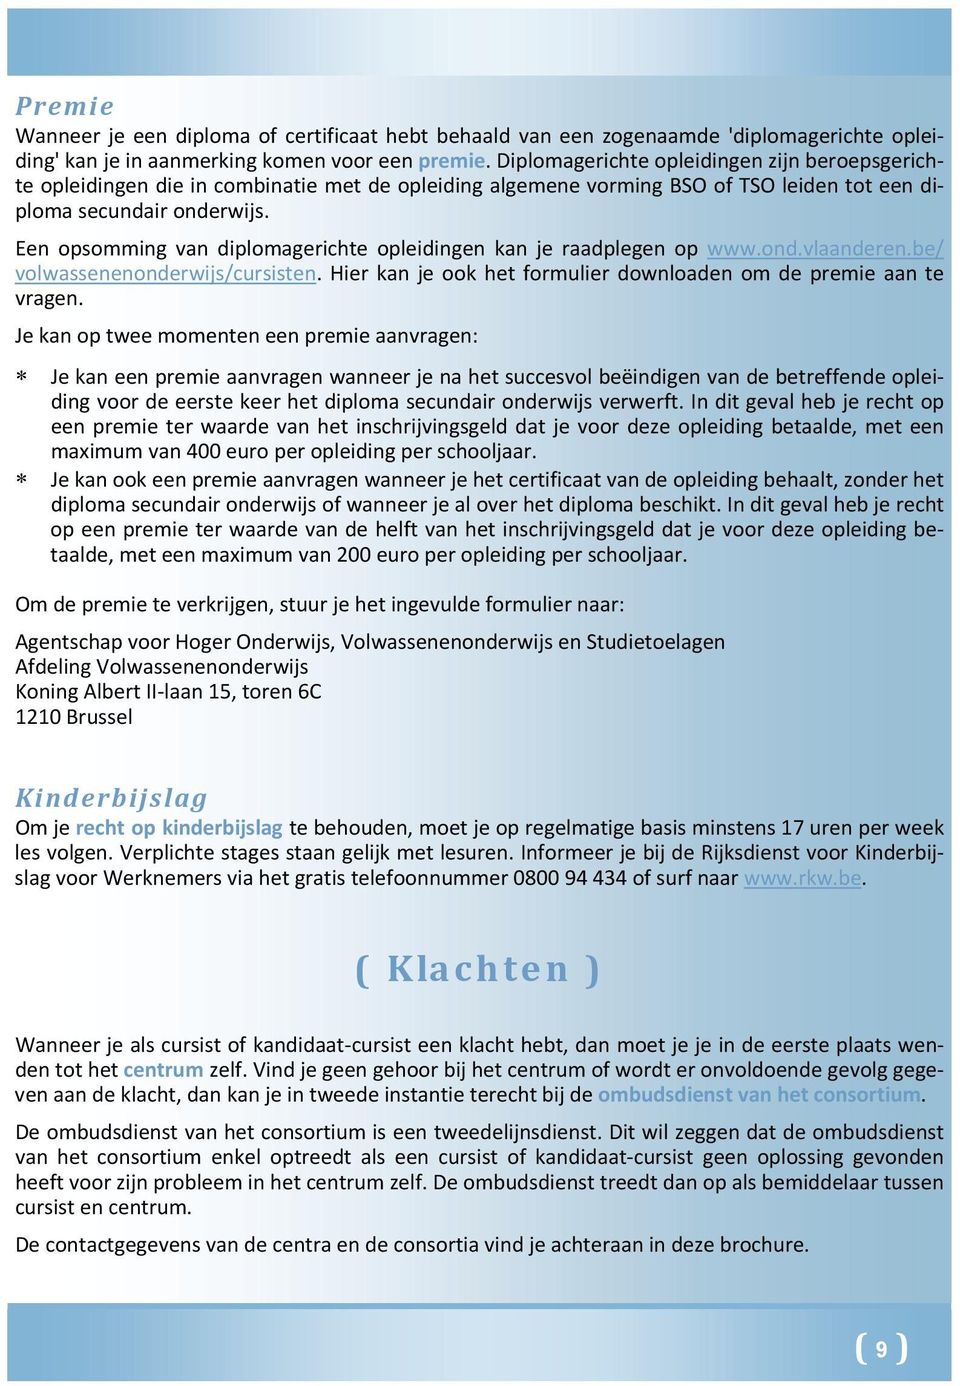 Een opsomming van diplomagerichte opleidingen kan je raadplegen op www.ond.vlaanderen.be/ volwassenenonderwijs/cursisten. Hier kan je ook het formulier downloaden om de premie aan te vragen.